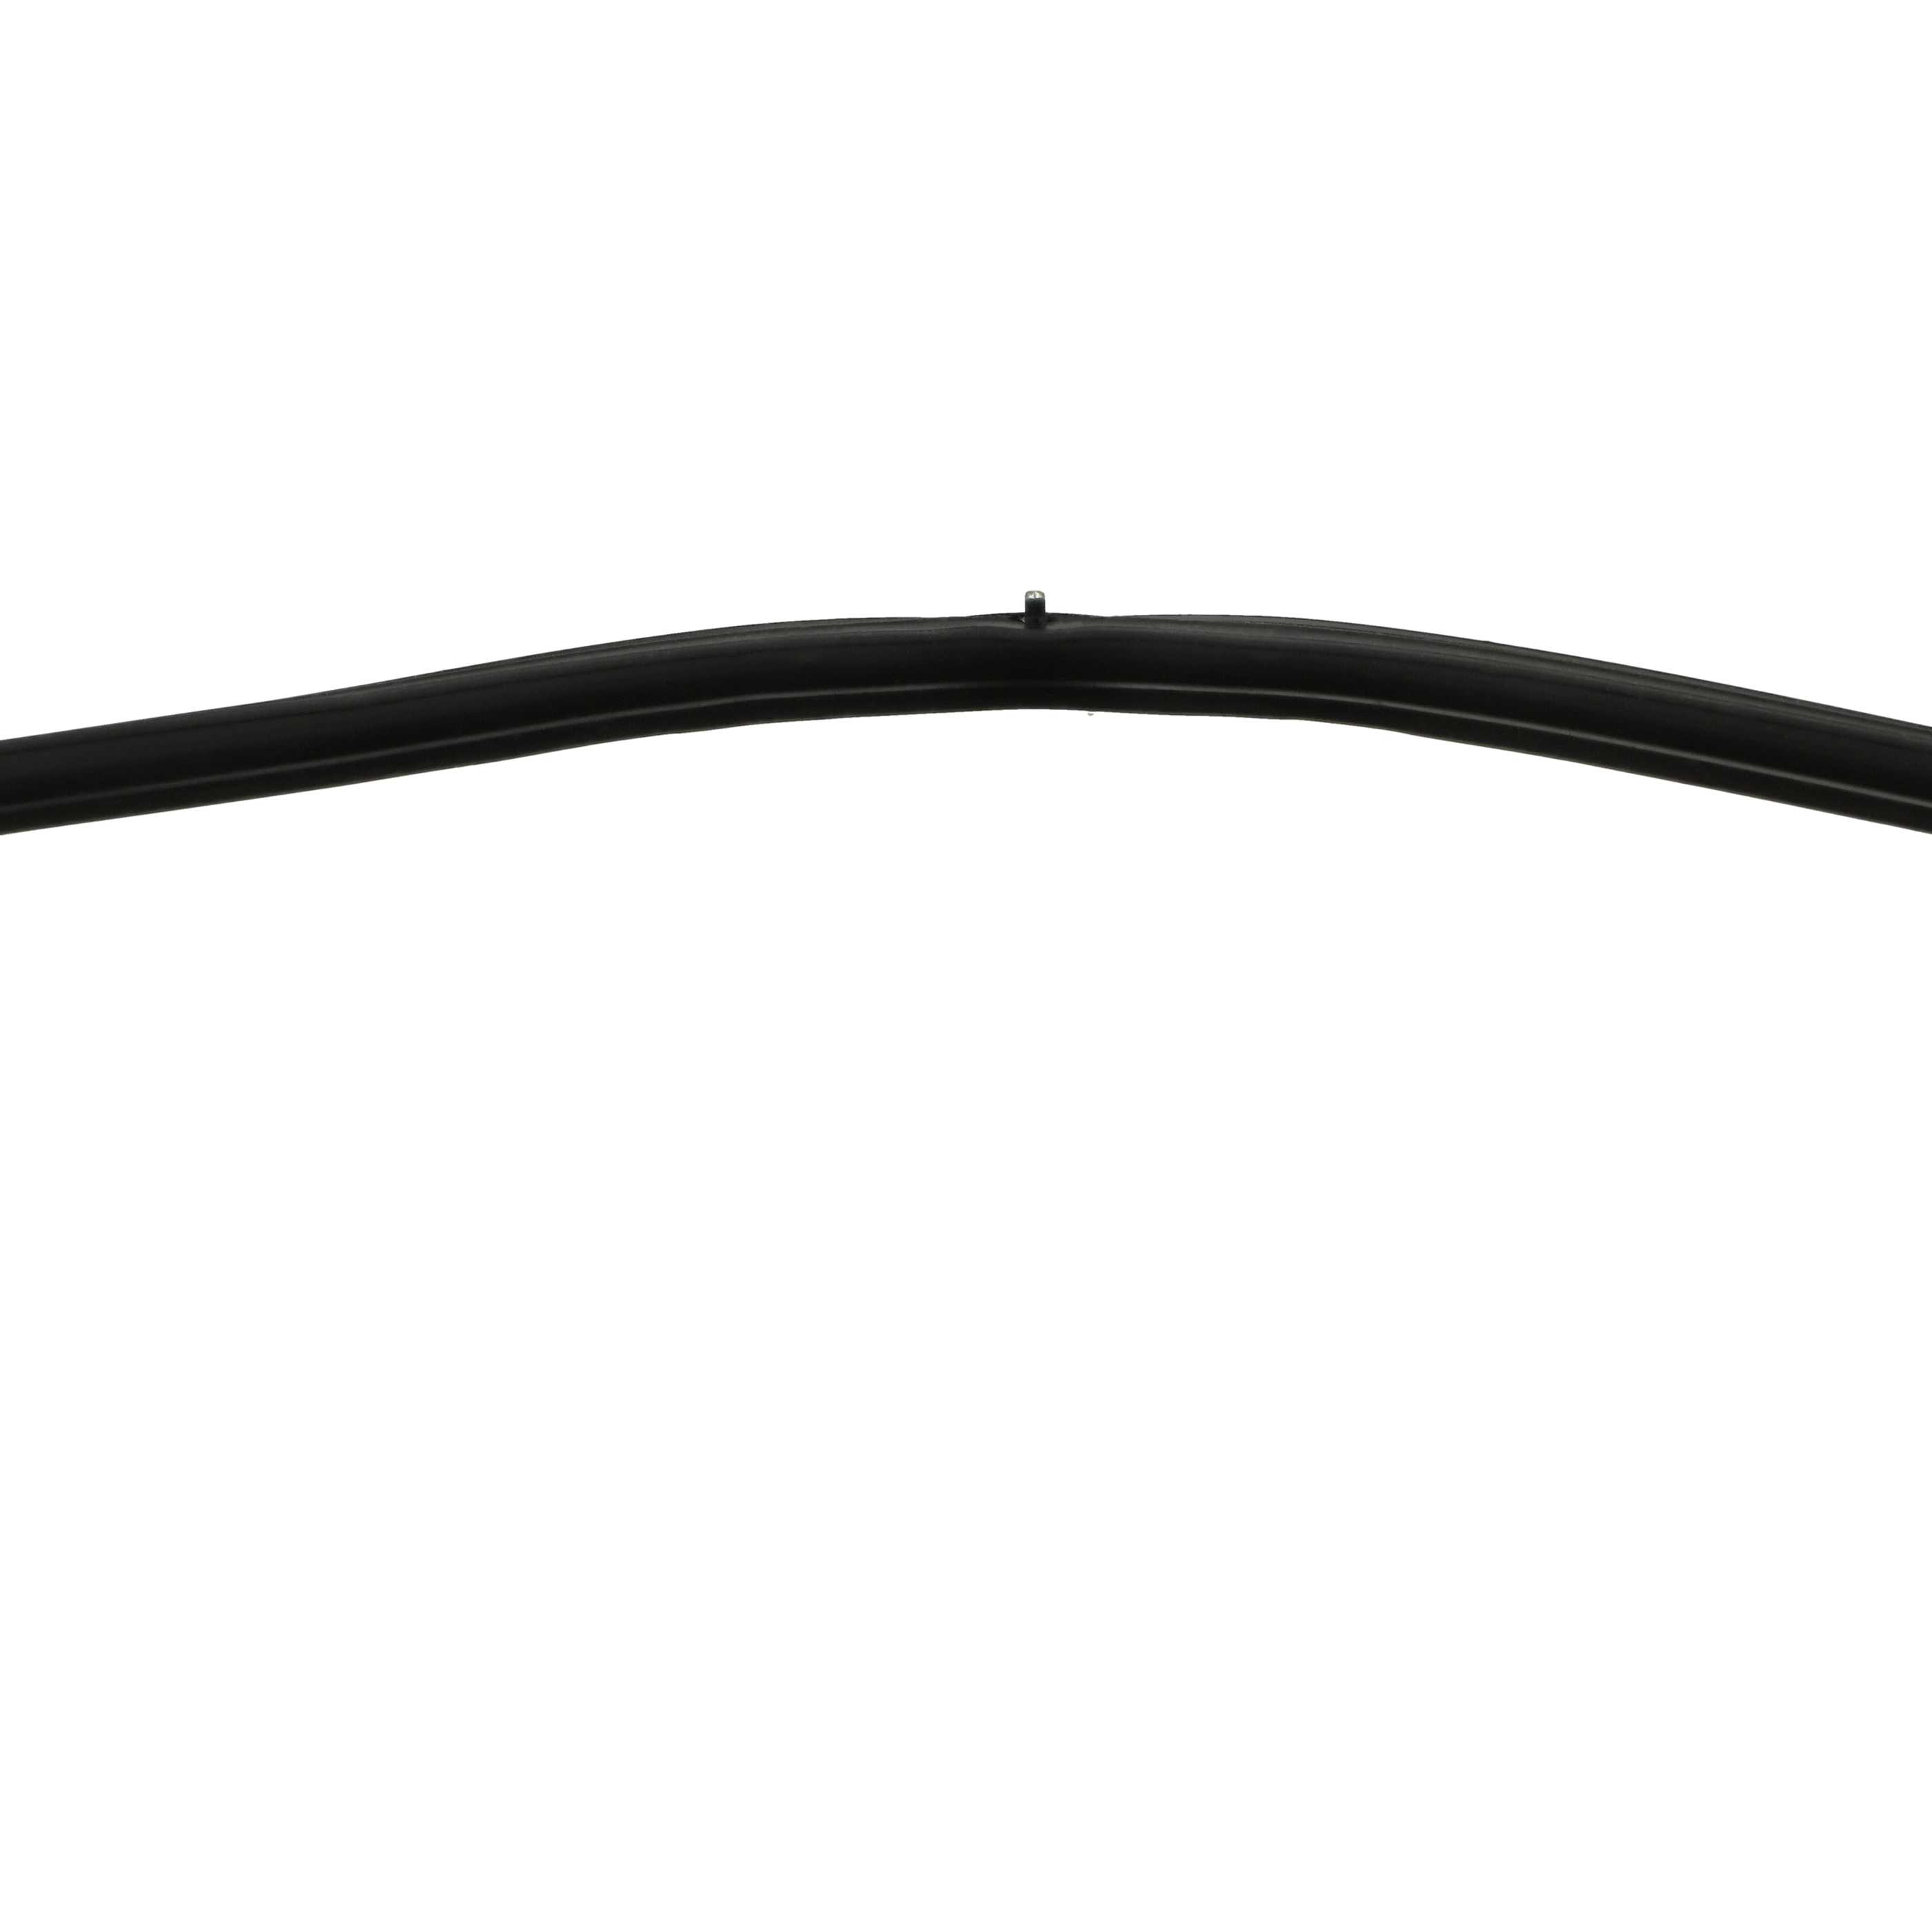 Joint de porte avec crochets d'angle remplace Ariston ARI081579 pour four Hotpoint - 43x32x0,8 cm, noir